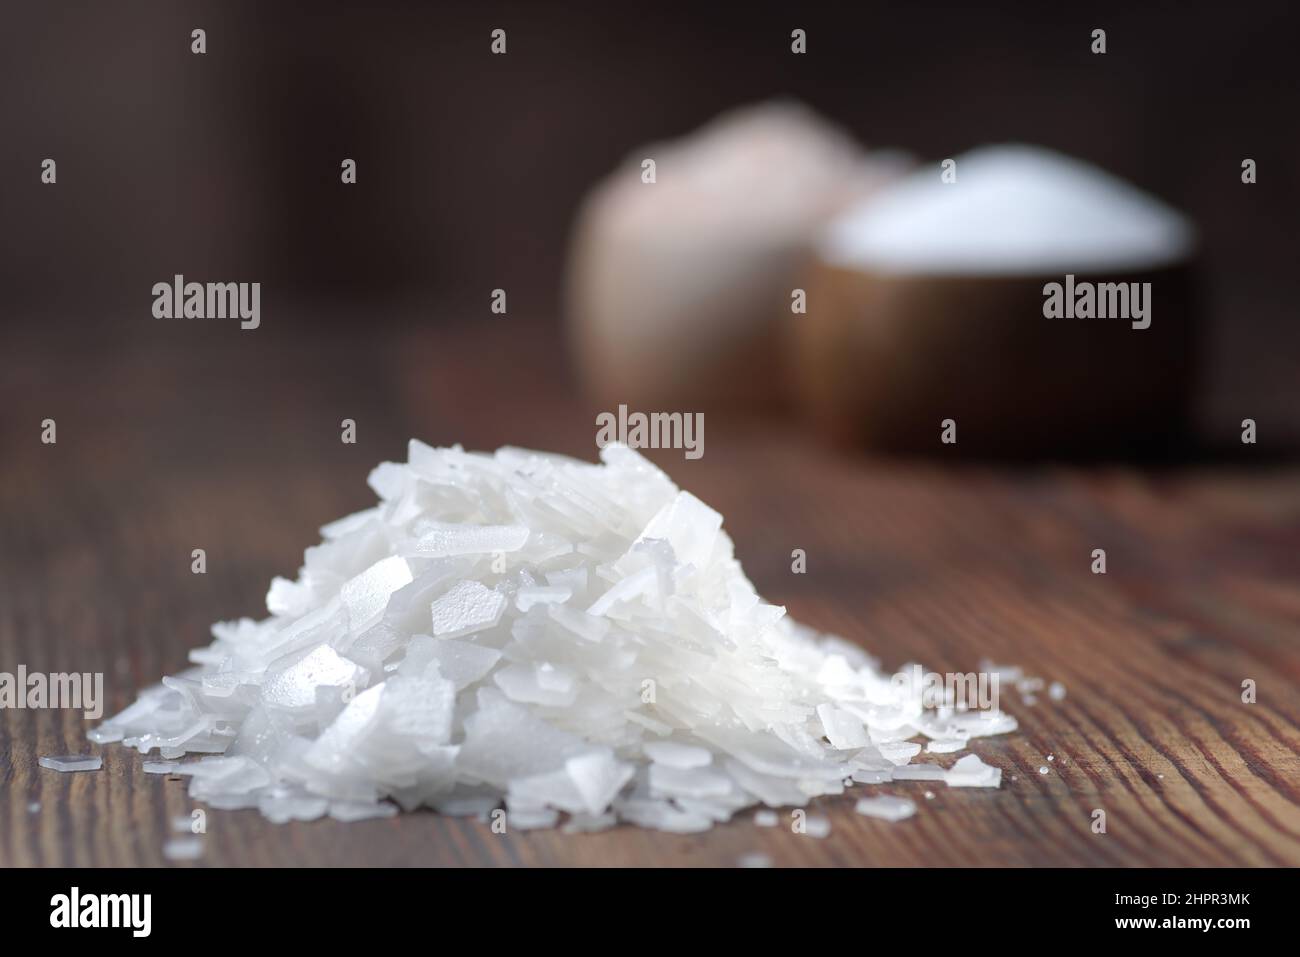 Différents types naturels de sel sur un fond en bois. Cristaux de sel dans un récipient en bois Banque D'Images